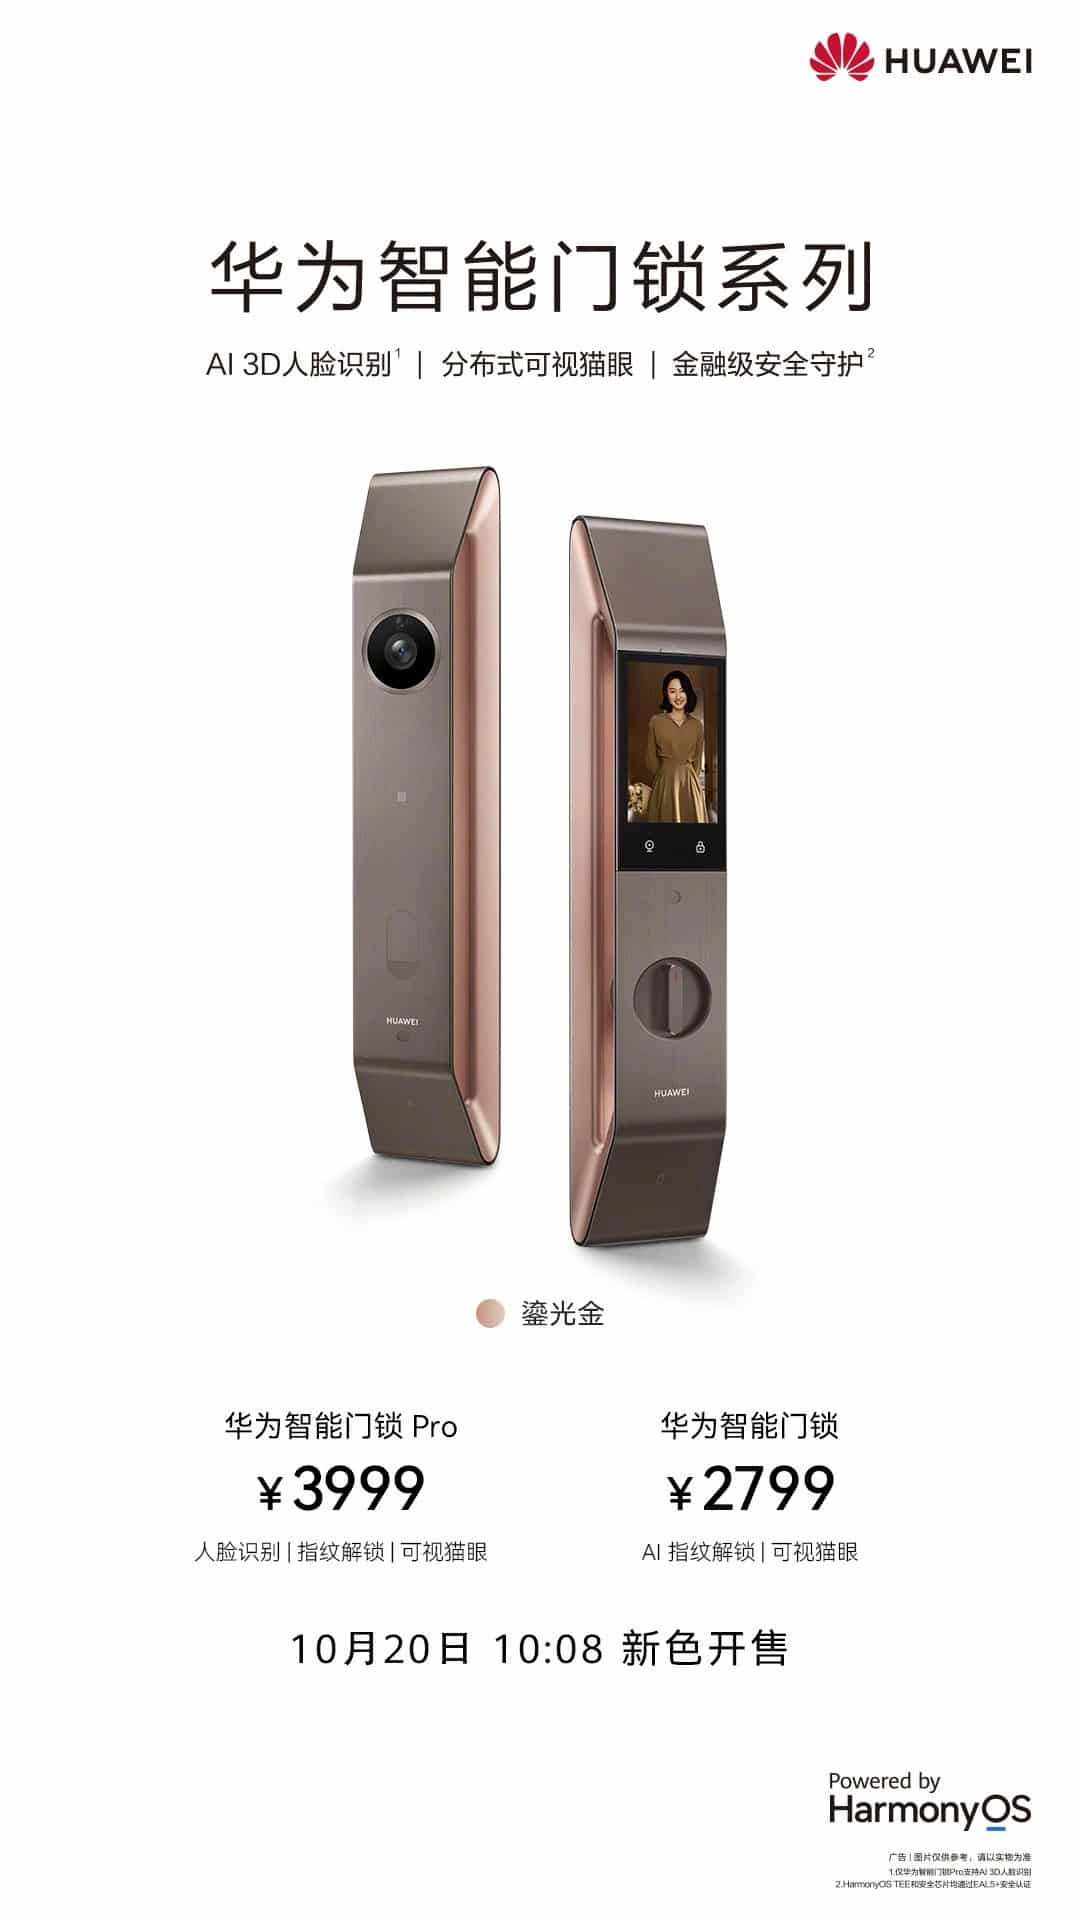 Huawei smart door lock